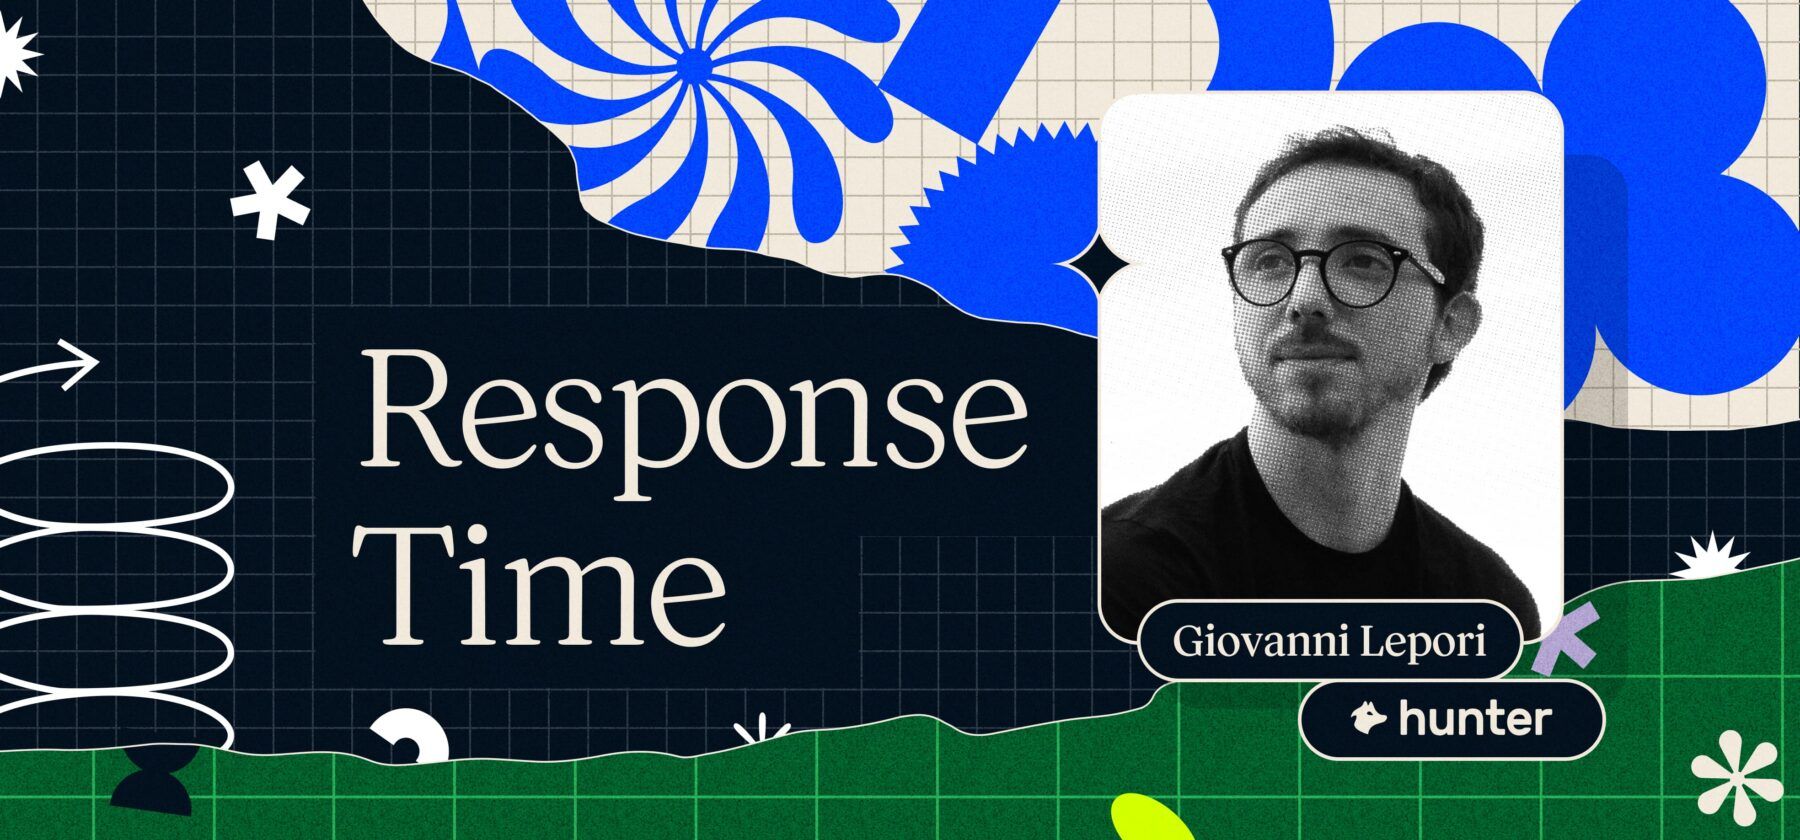 Response Time: Vol. 15 blog hero image.